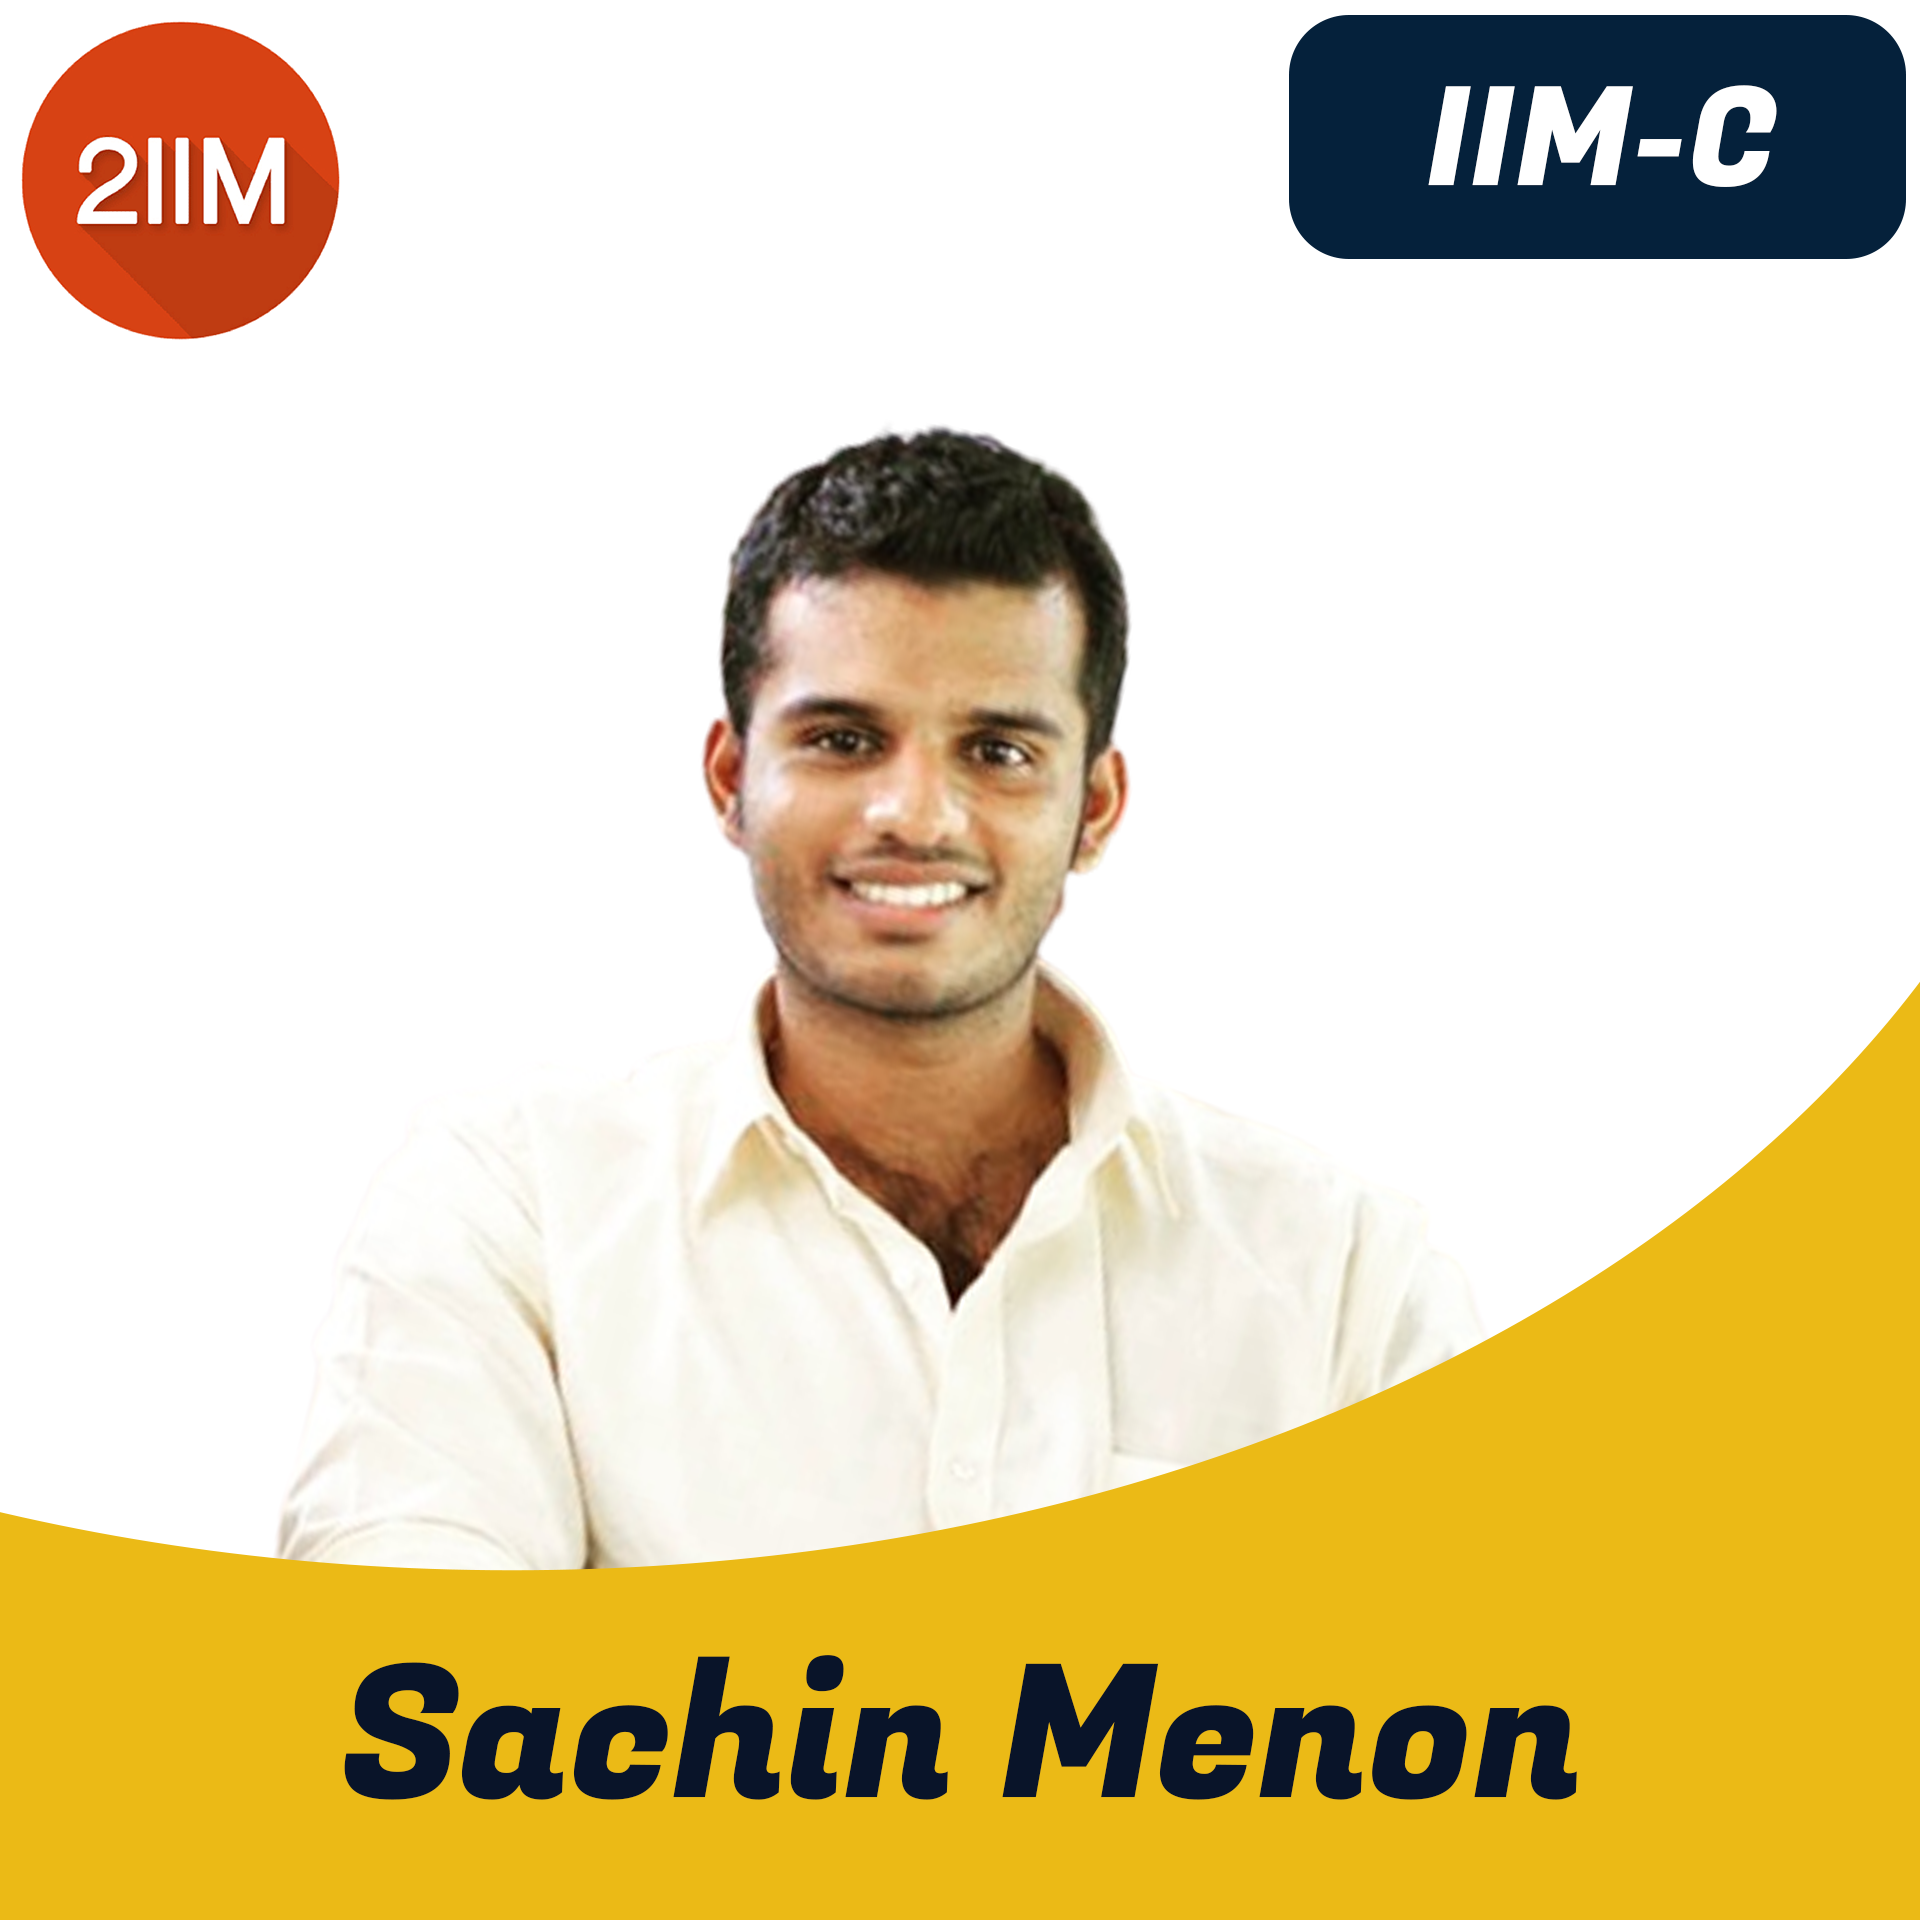  Sachin Menon 